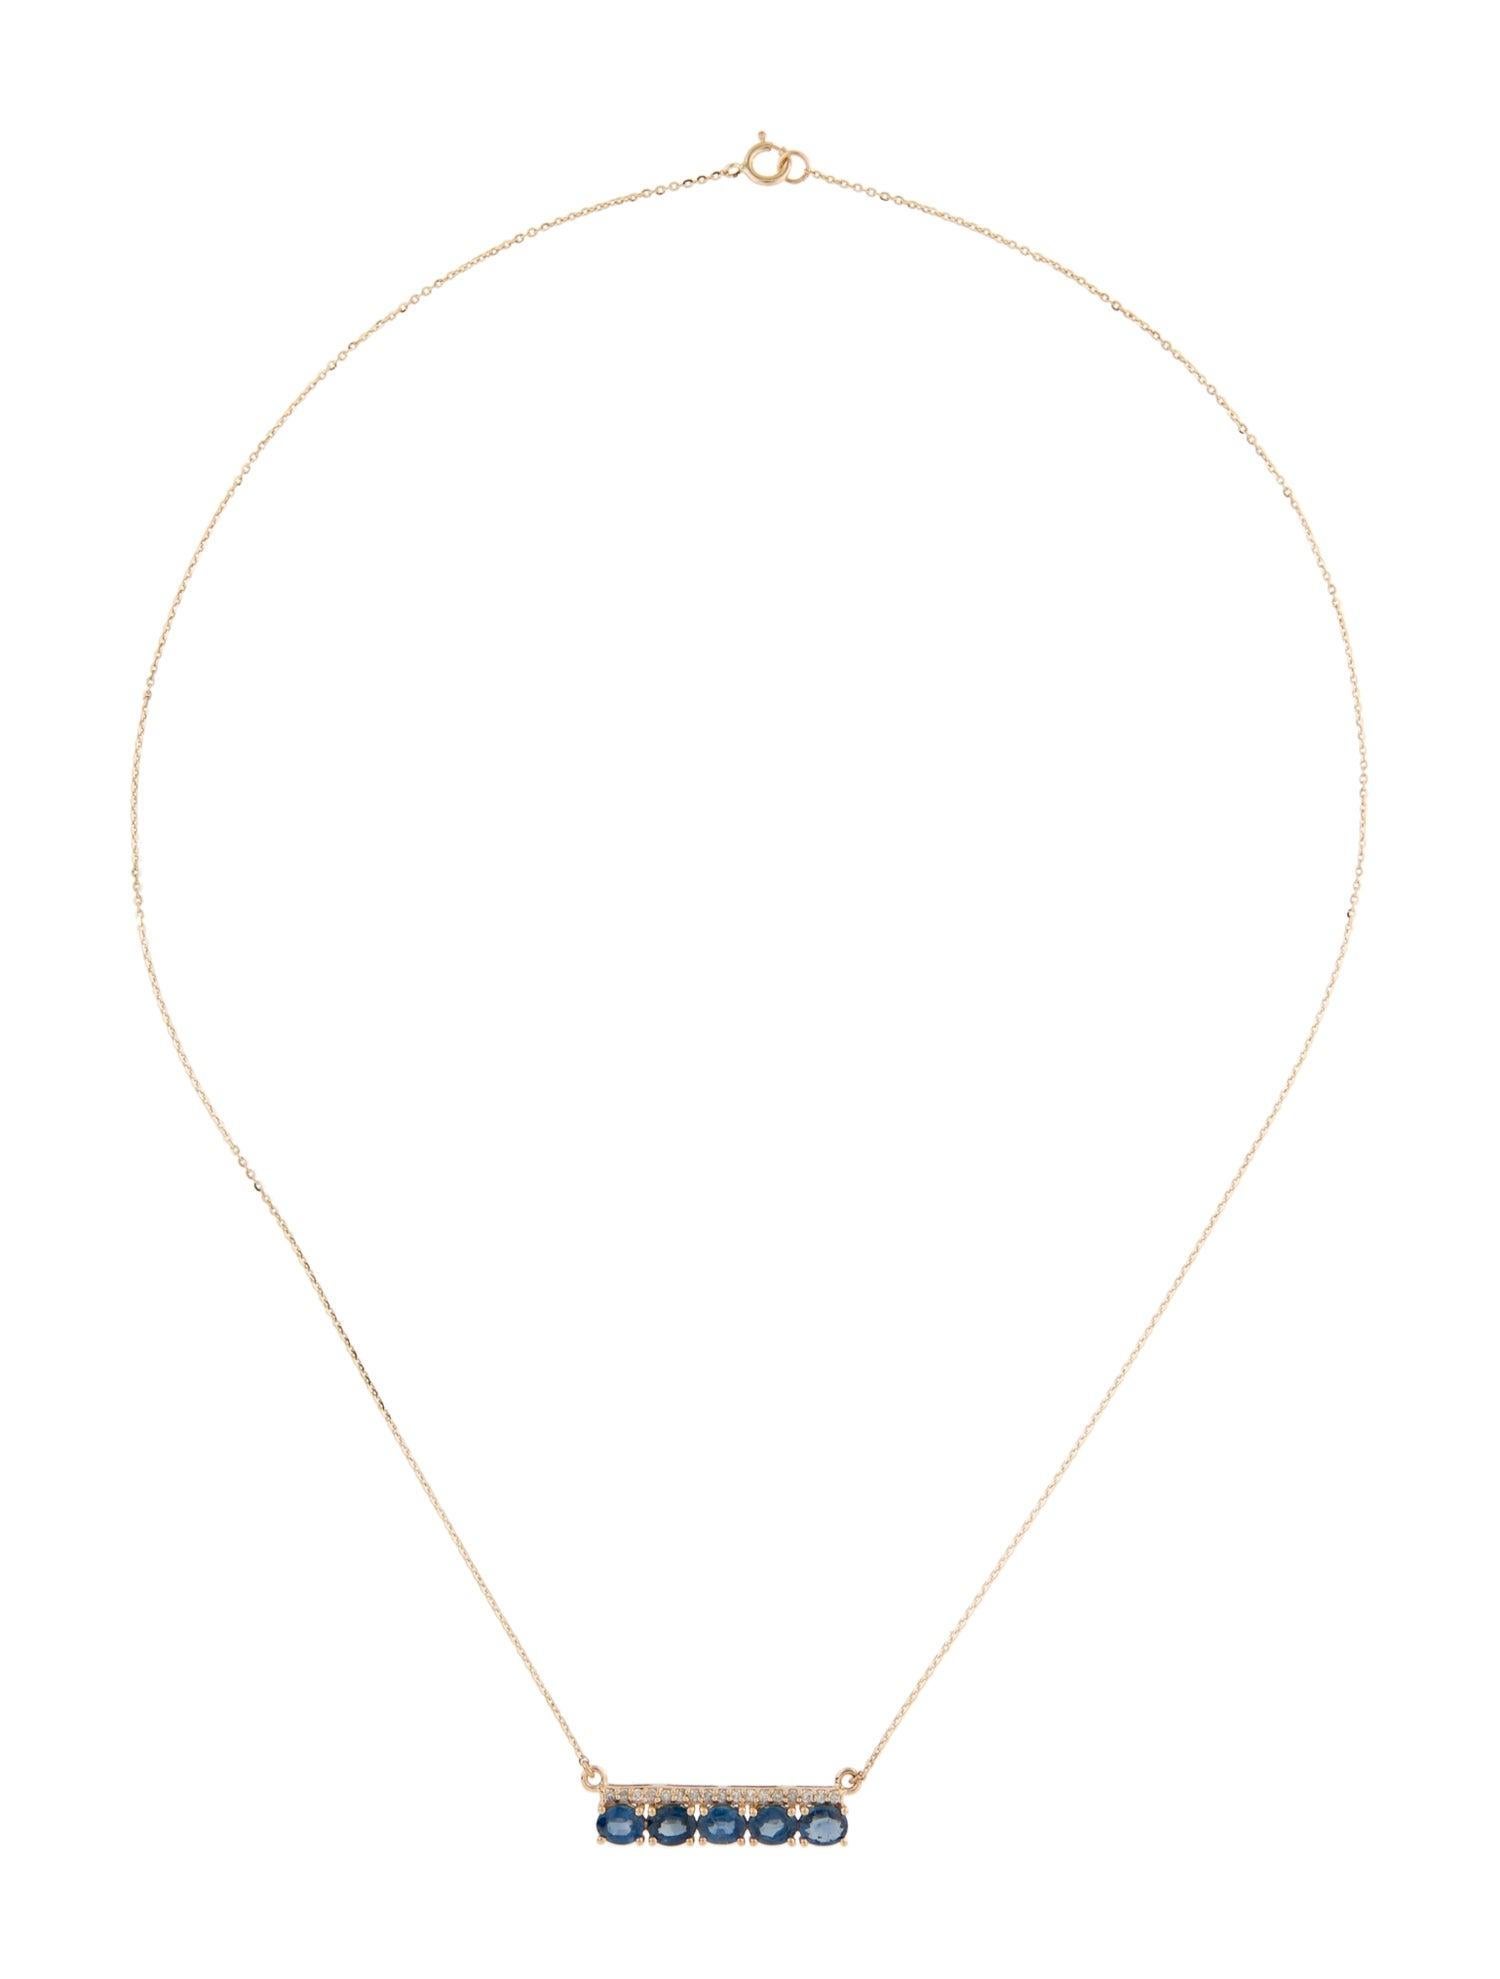 Brilliant Cut Exquisite 14K Sapphire & Diamond Bar Pendant Necklace - Elegant Gemstone Sparkle For Sale